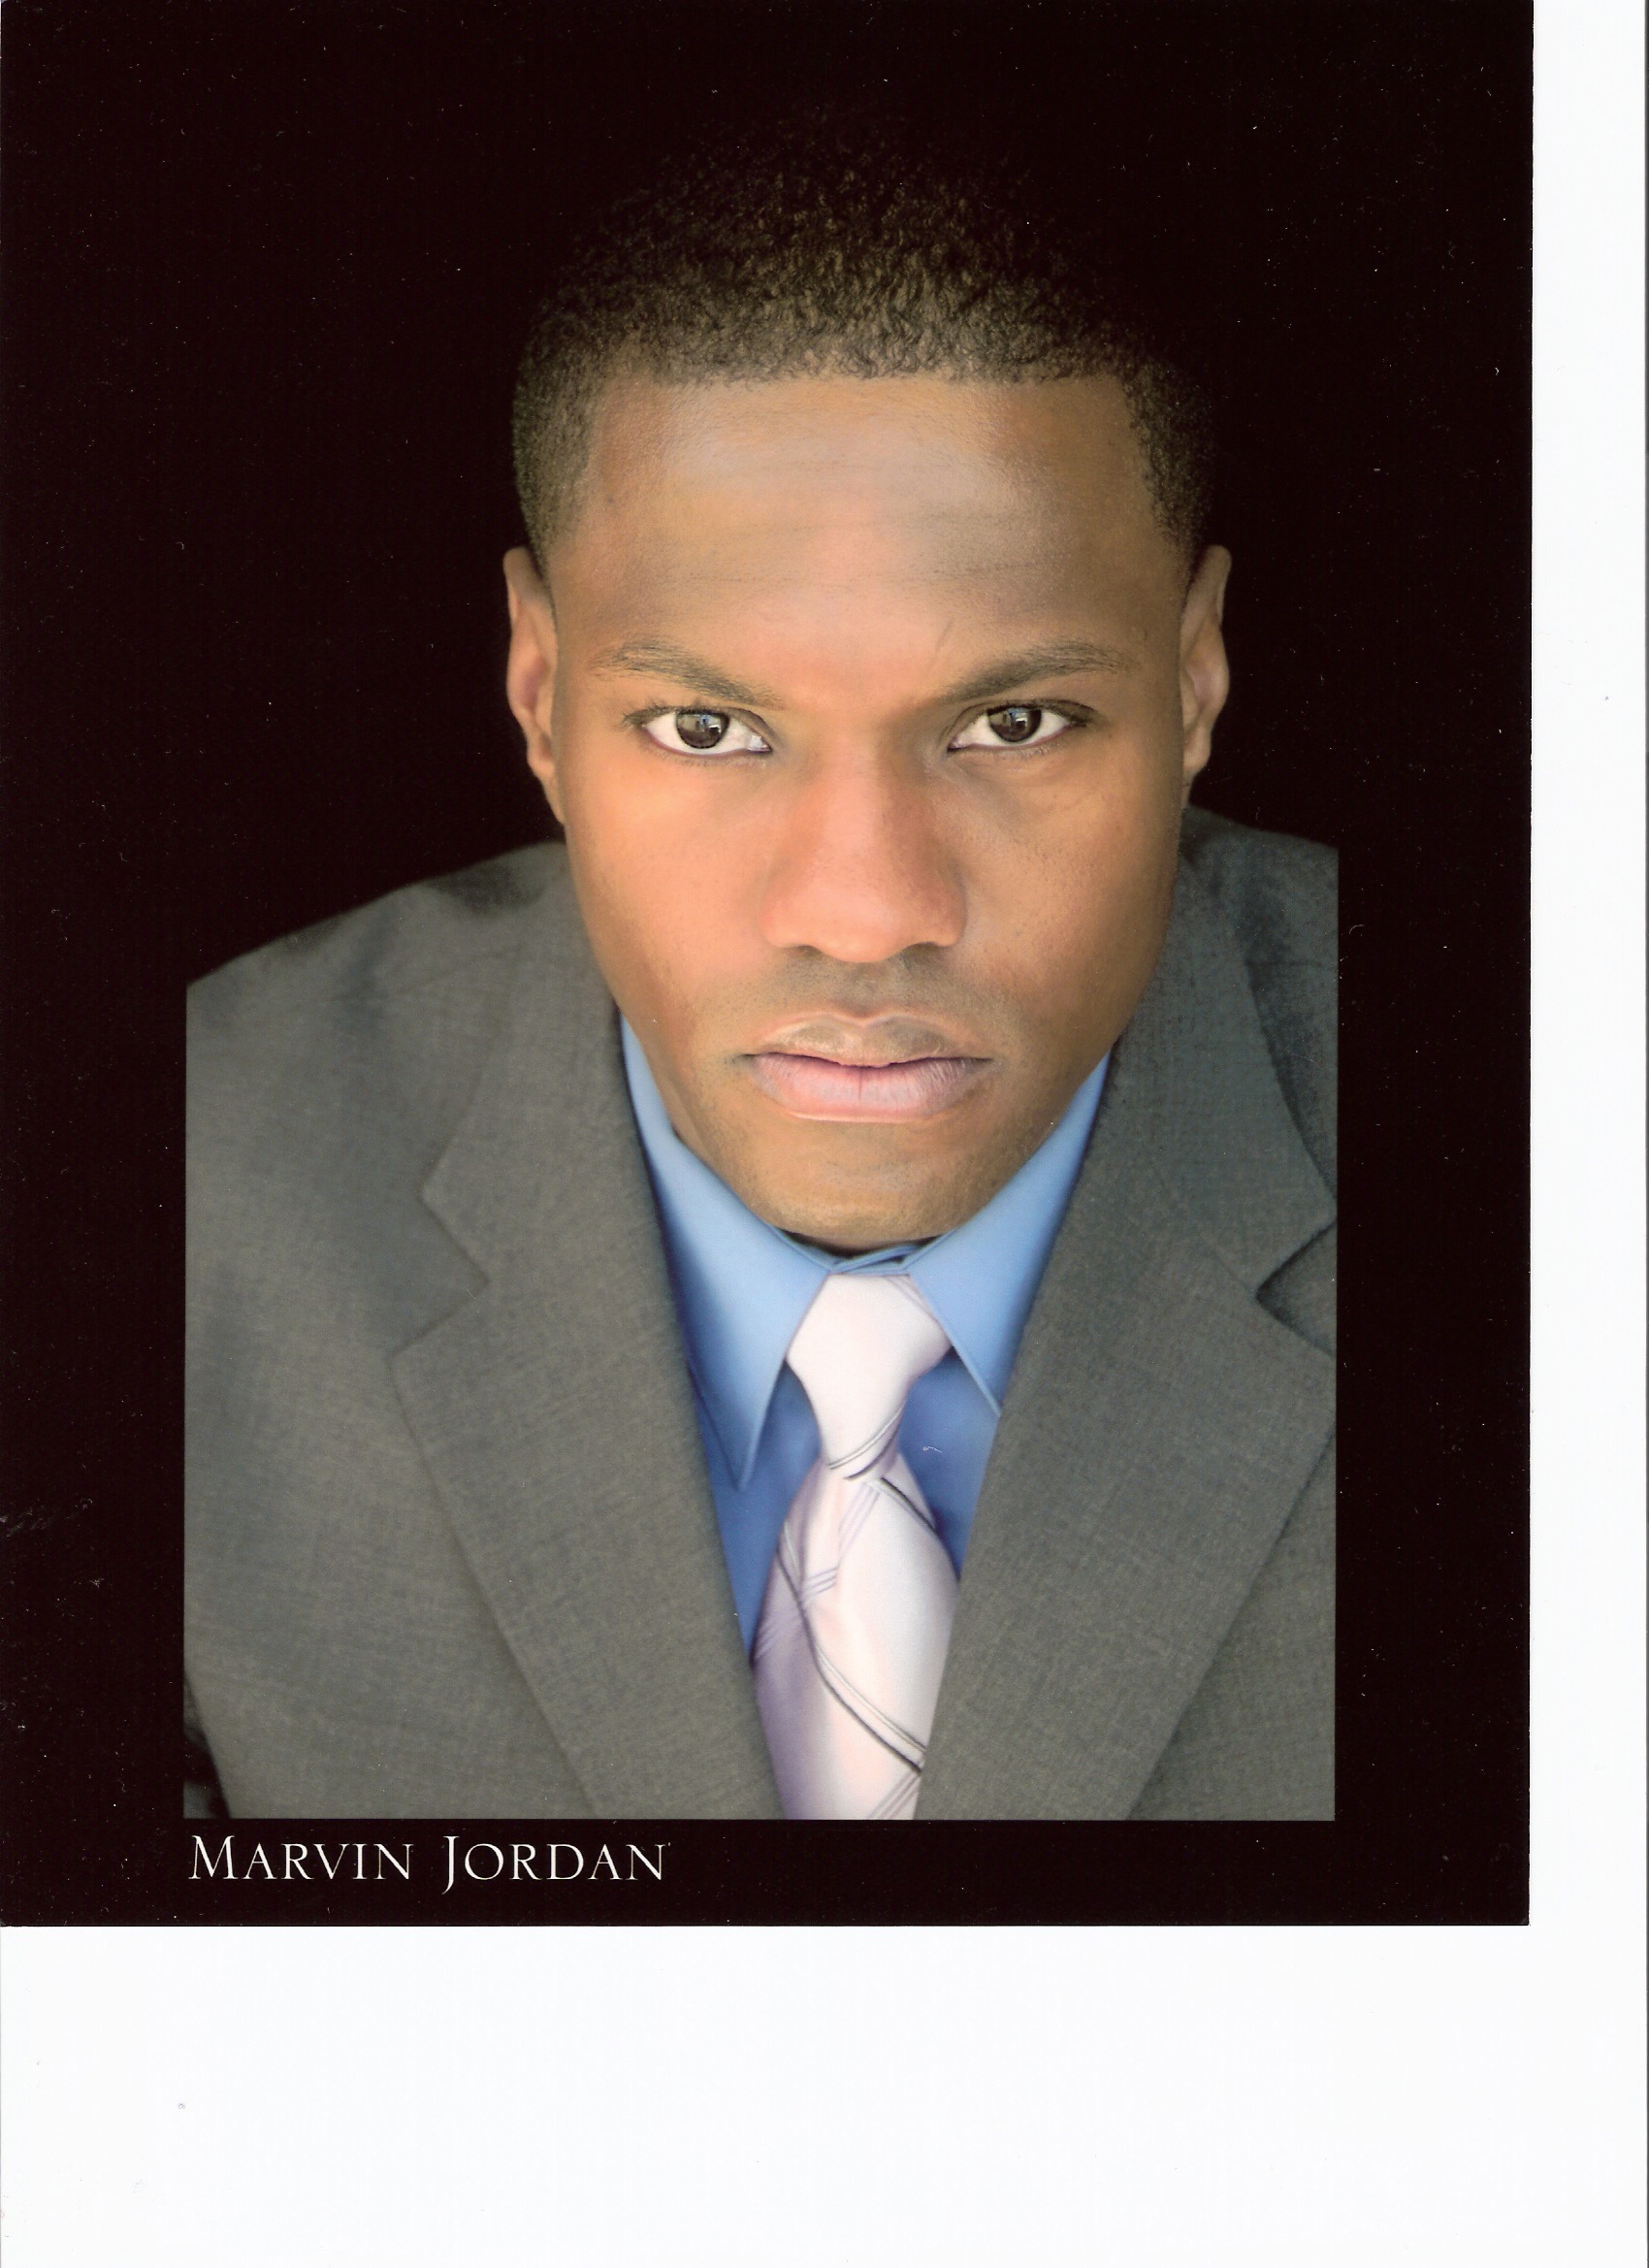 Marvin Jordan